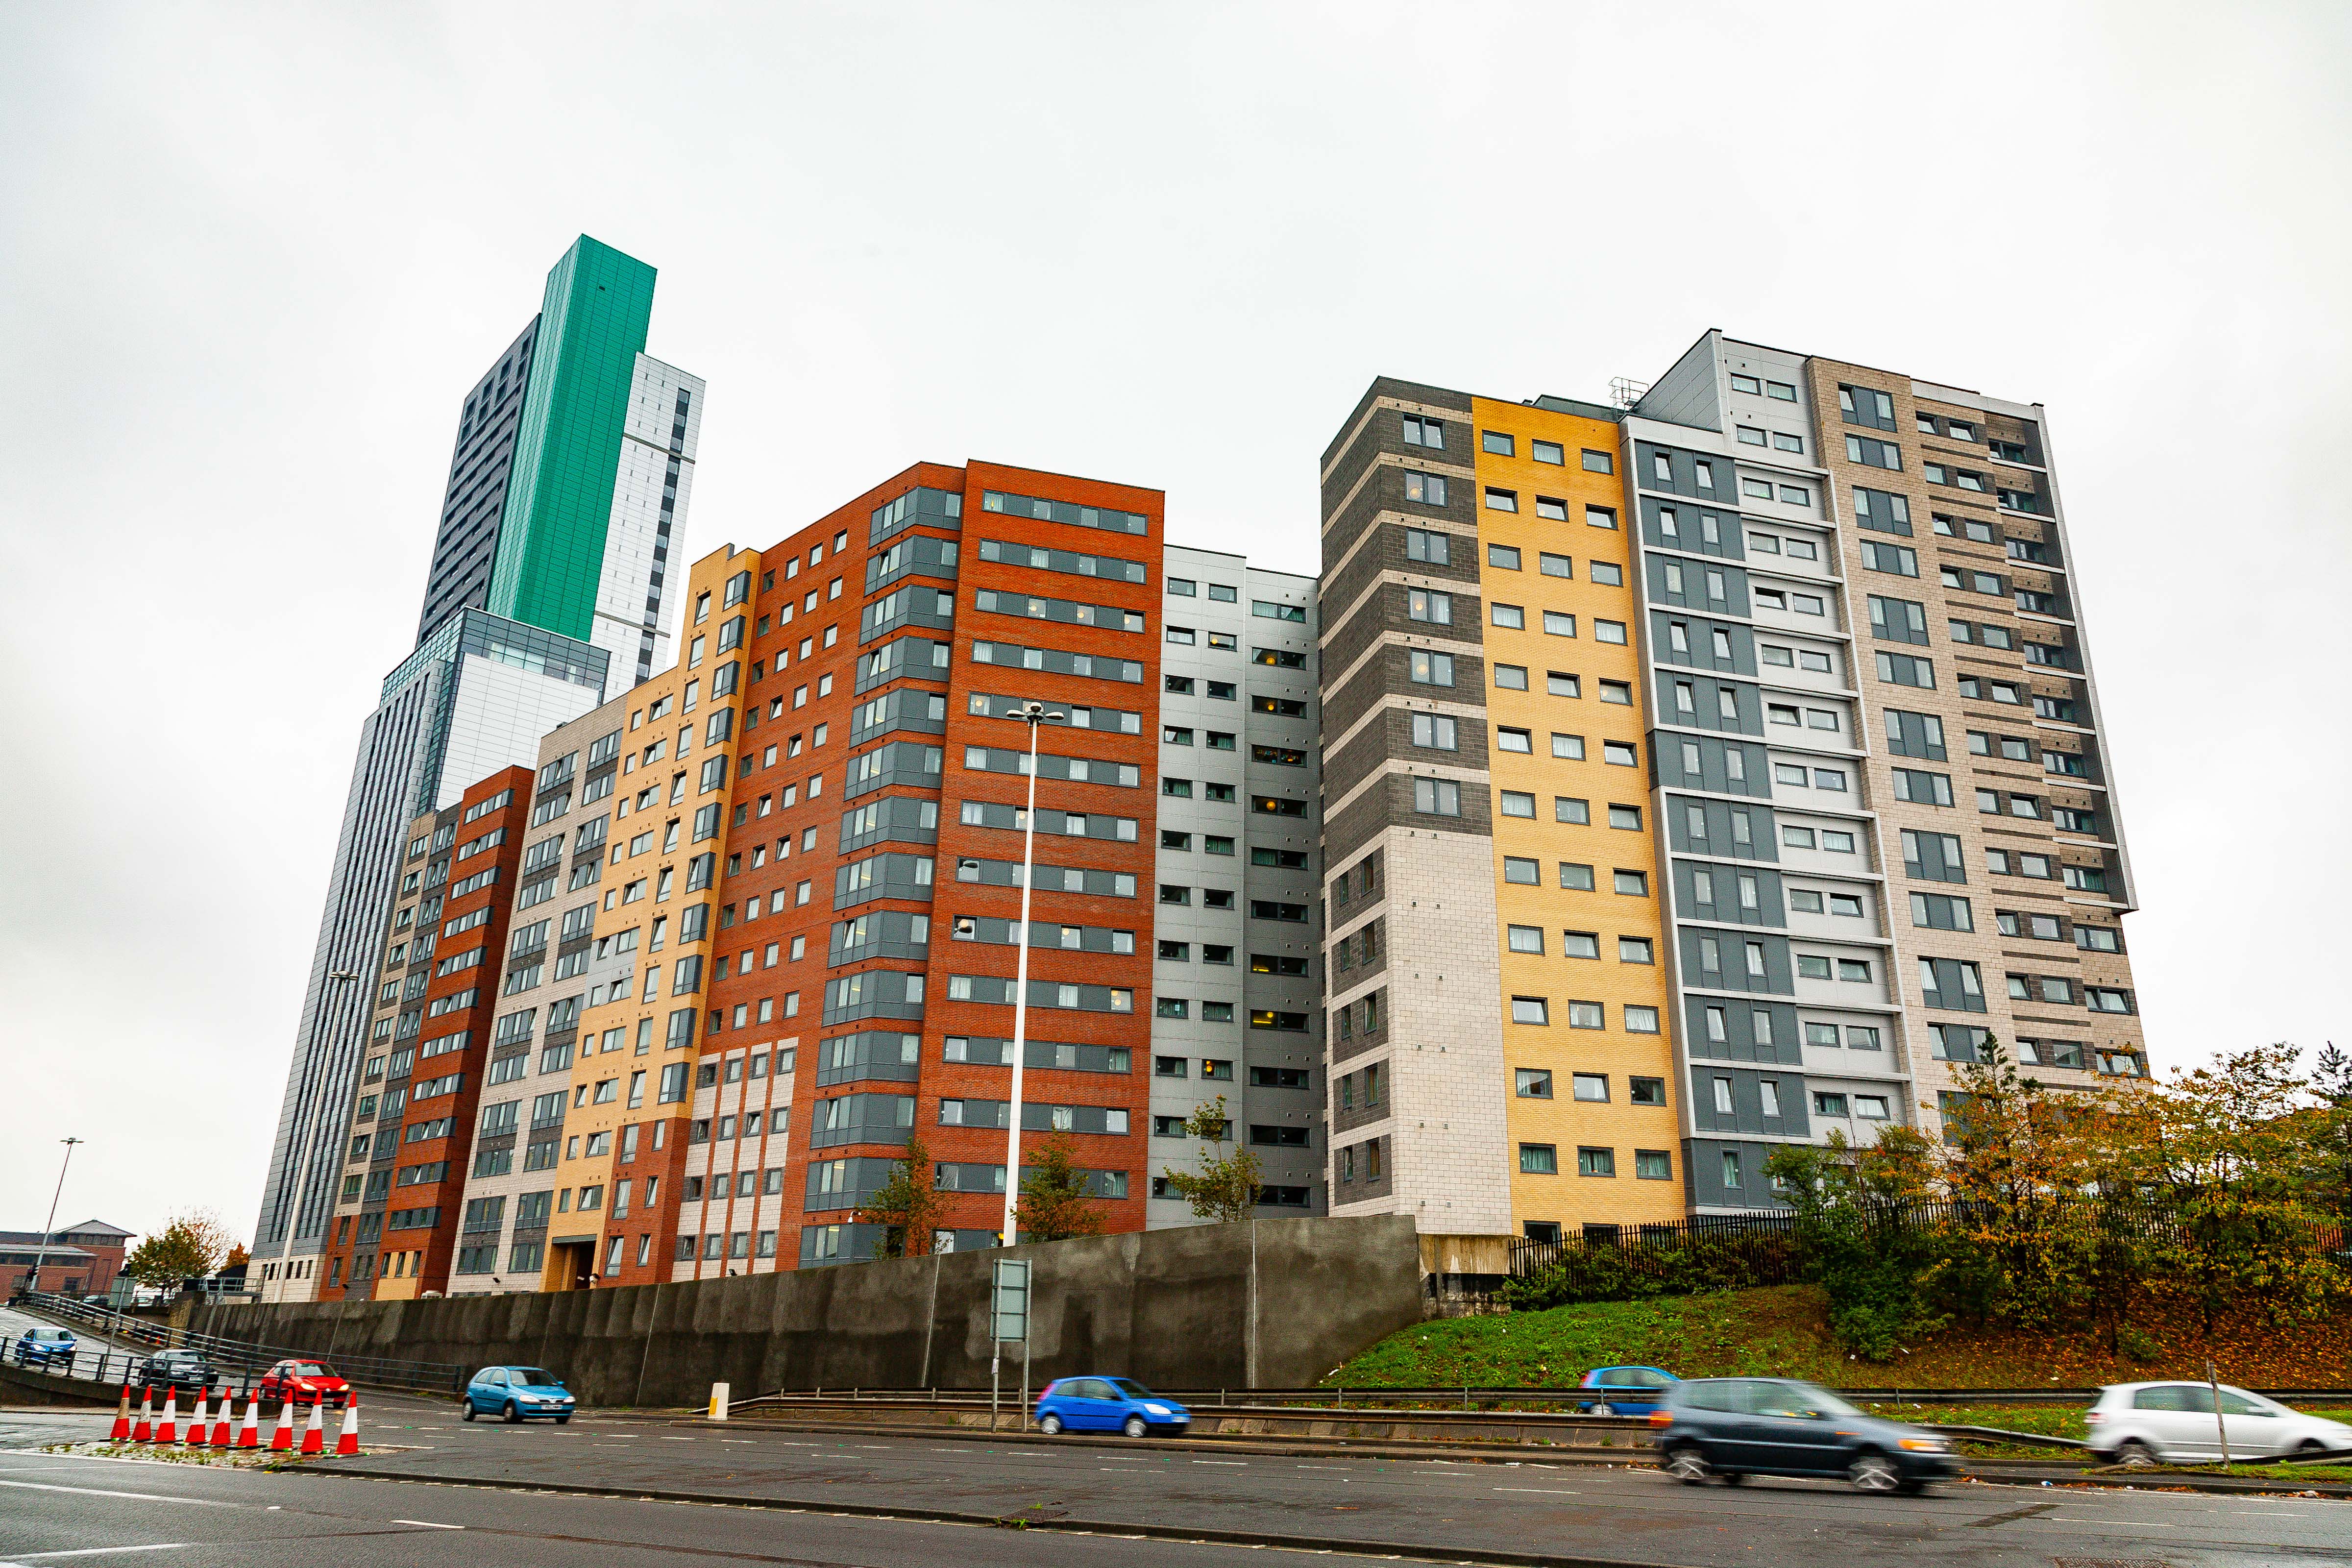 UK, Leeds Prov, Cluster Of Buildings, 2009, IMG 6991